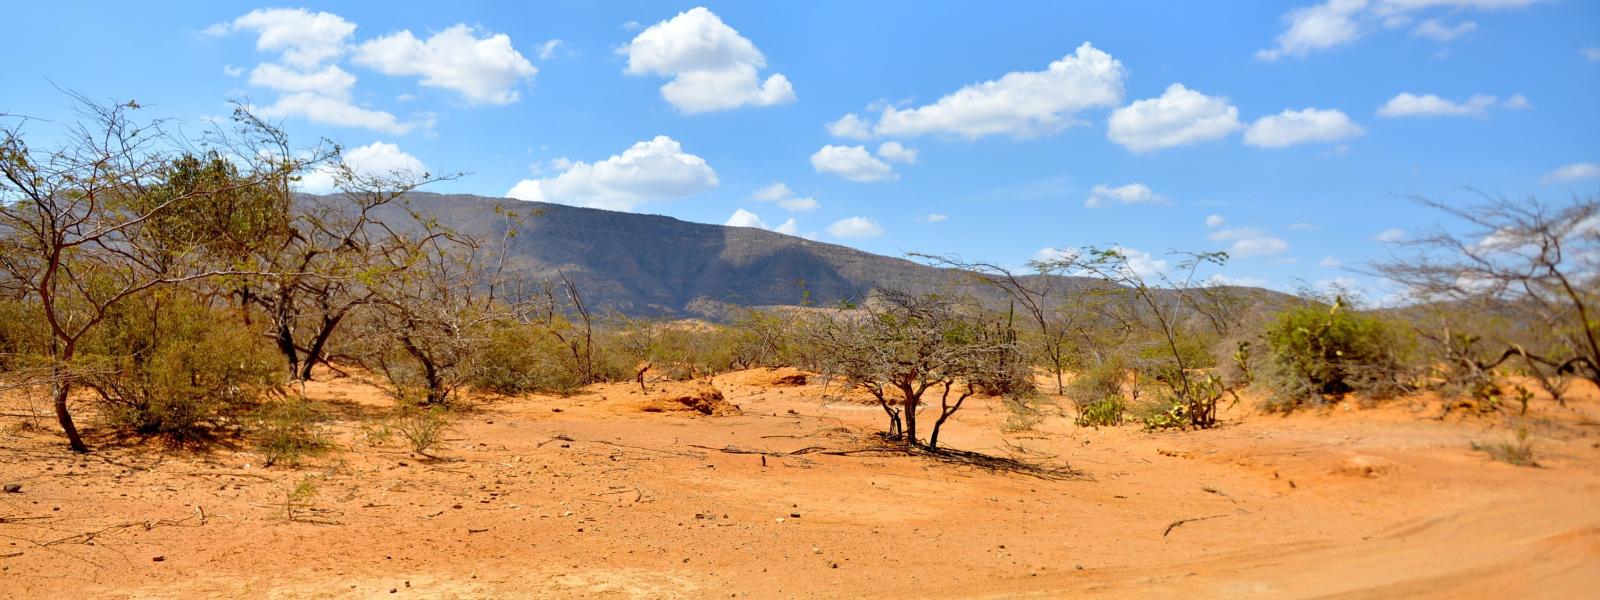 Desertic landscape in La Guajira, Colombia.